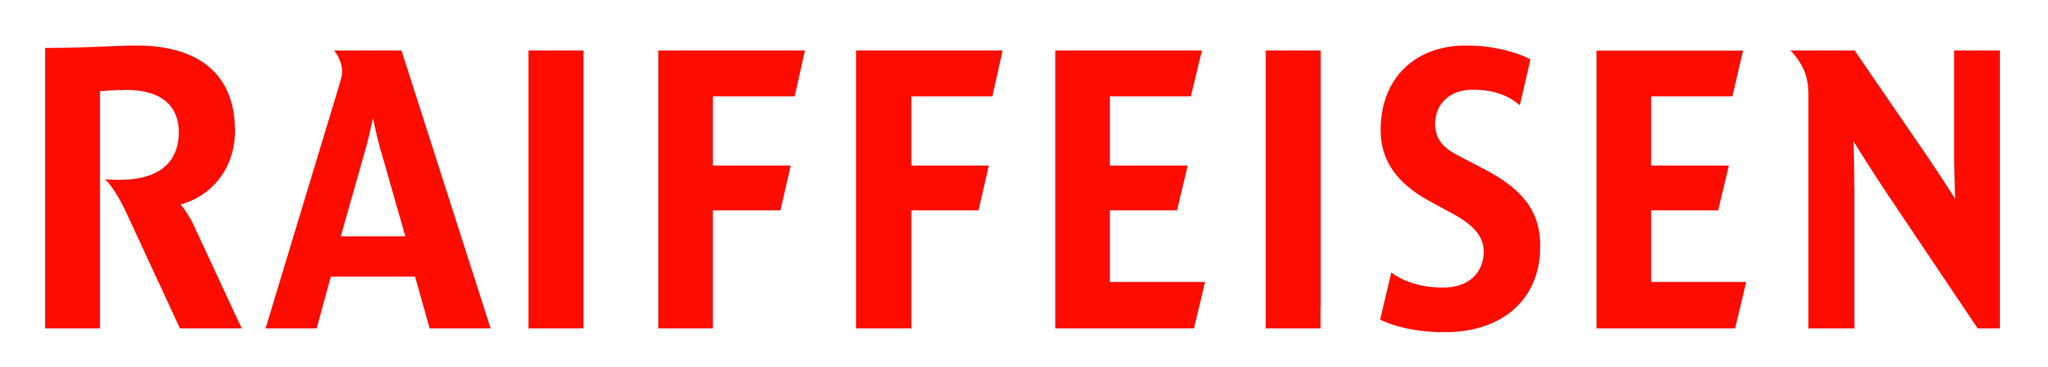 Raiffeisen_logo.tif